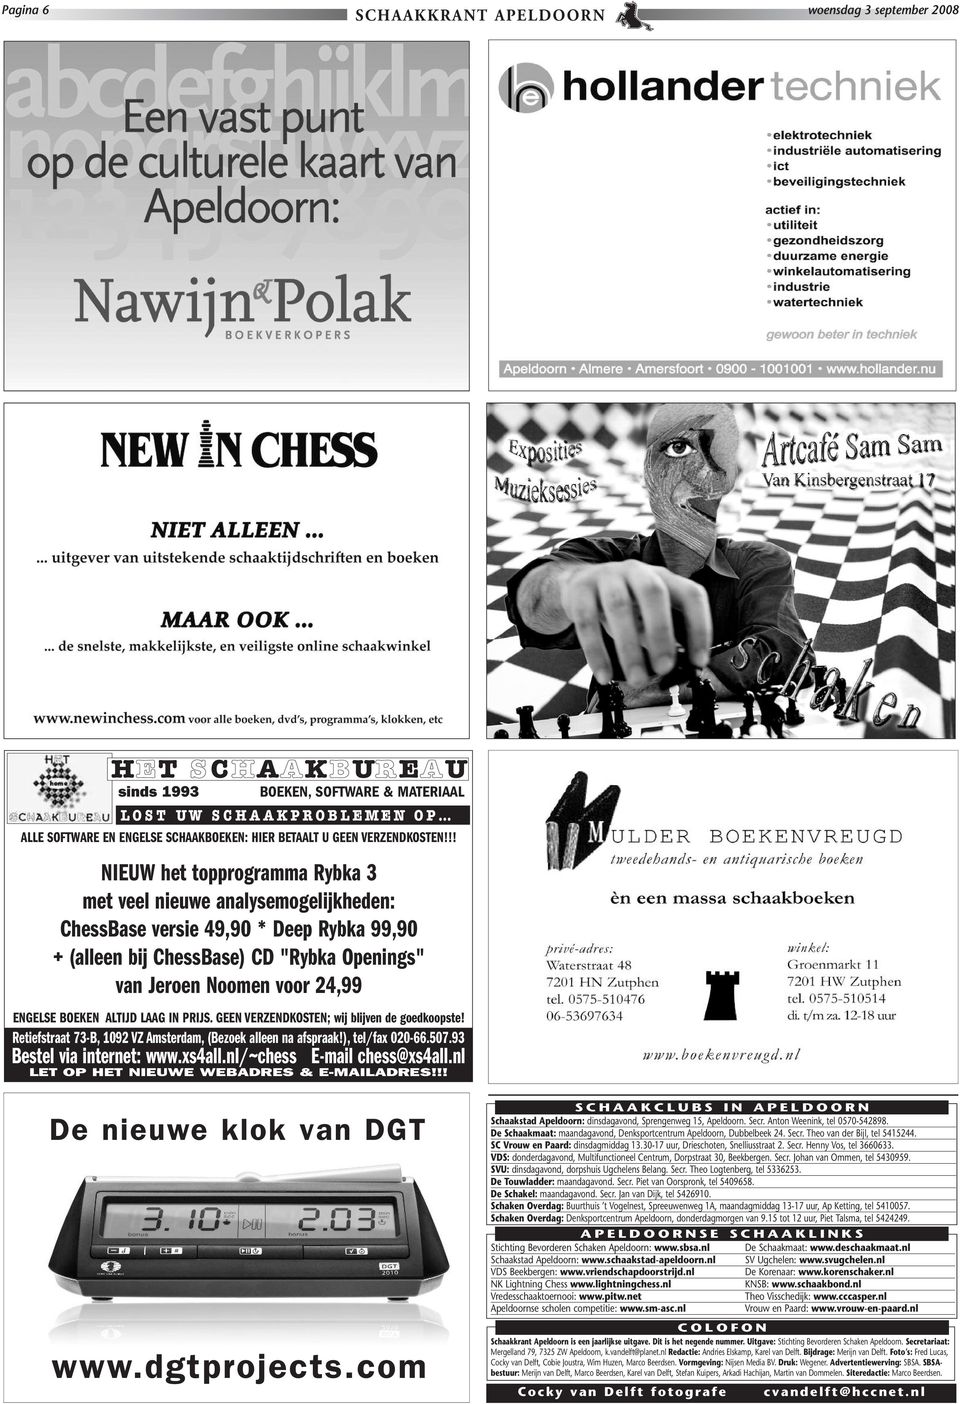 !! NIEUW het topprogramma Rybka 3 met veel nieuwe analysemogelijkheden: ChessBase versie 49,90 * Deep Rybka 99,90 + (alleen bij ChessBase) CD "Rybka Openings" van Jeroen Noomen voor 24,99 ENGELSE